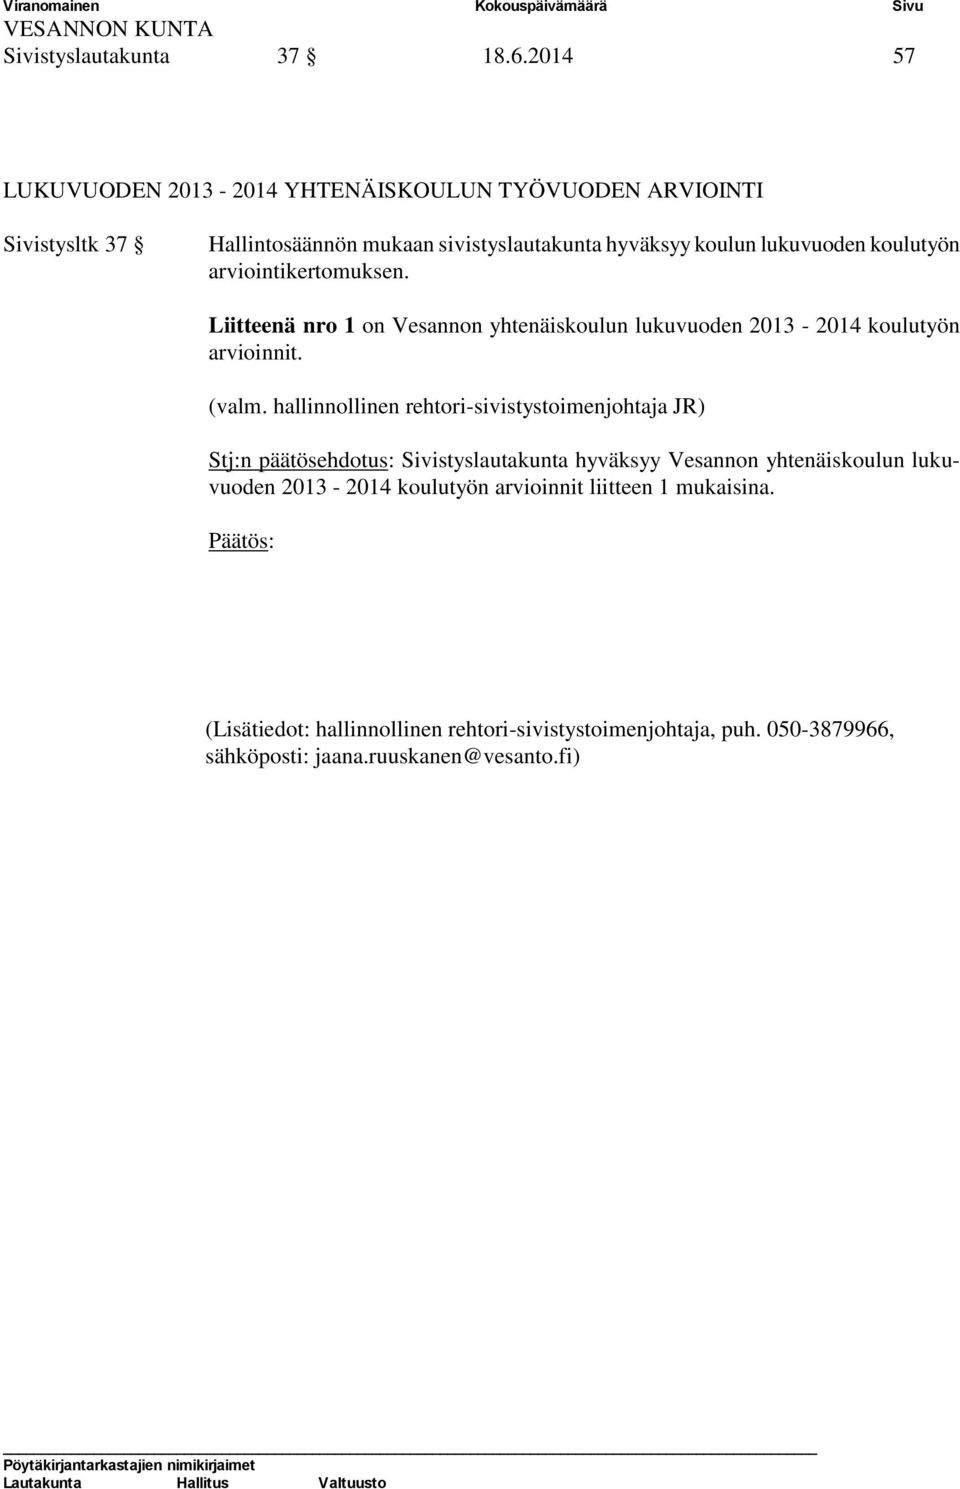 koulutyön arviointikertomuksen. Liitteenä nro 1 on Vesannon yhtenäiskoulun lukuvuoden 2013-2014 koulutyön arvioinnit. (valm.